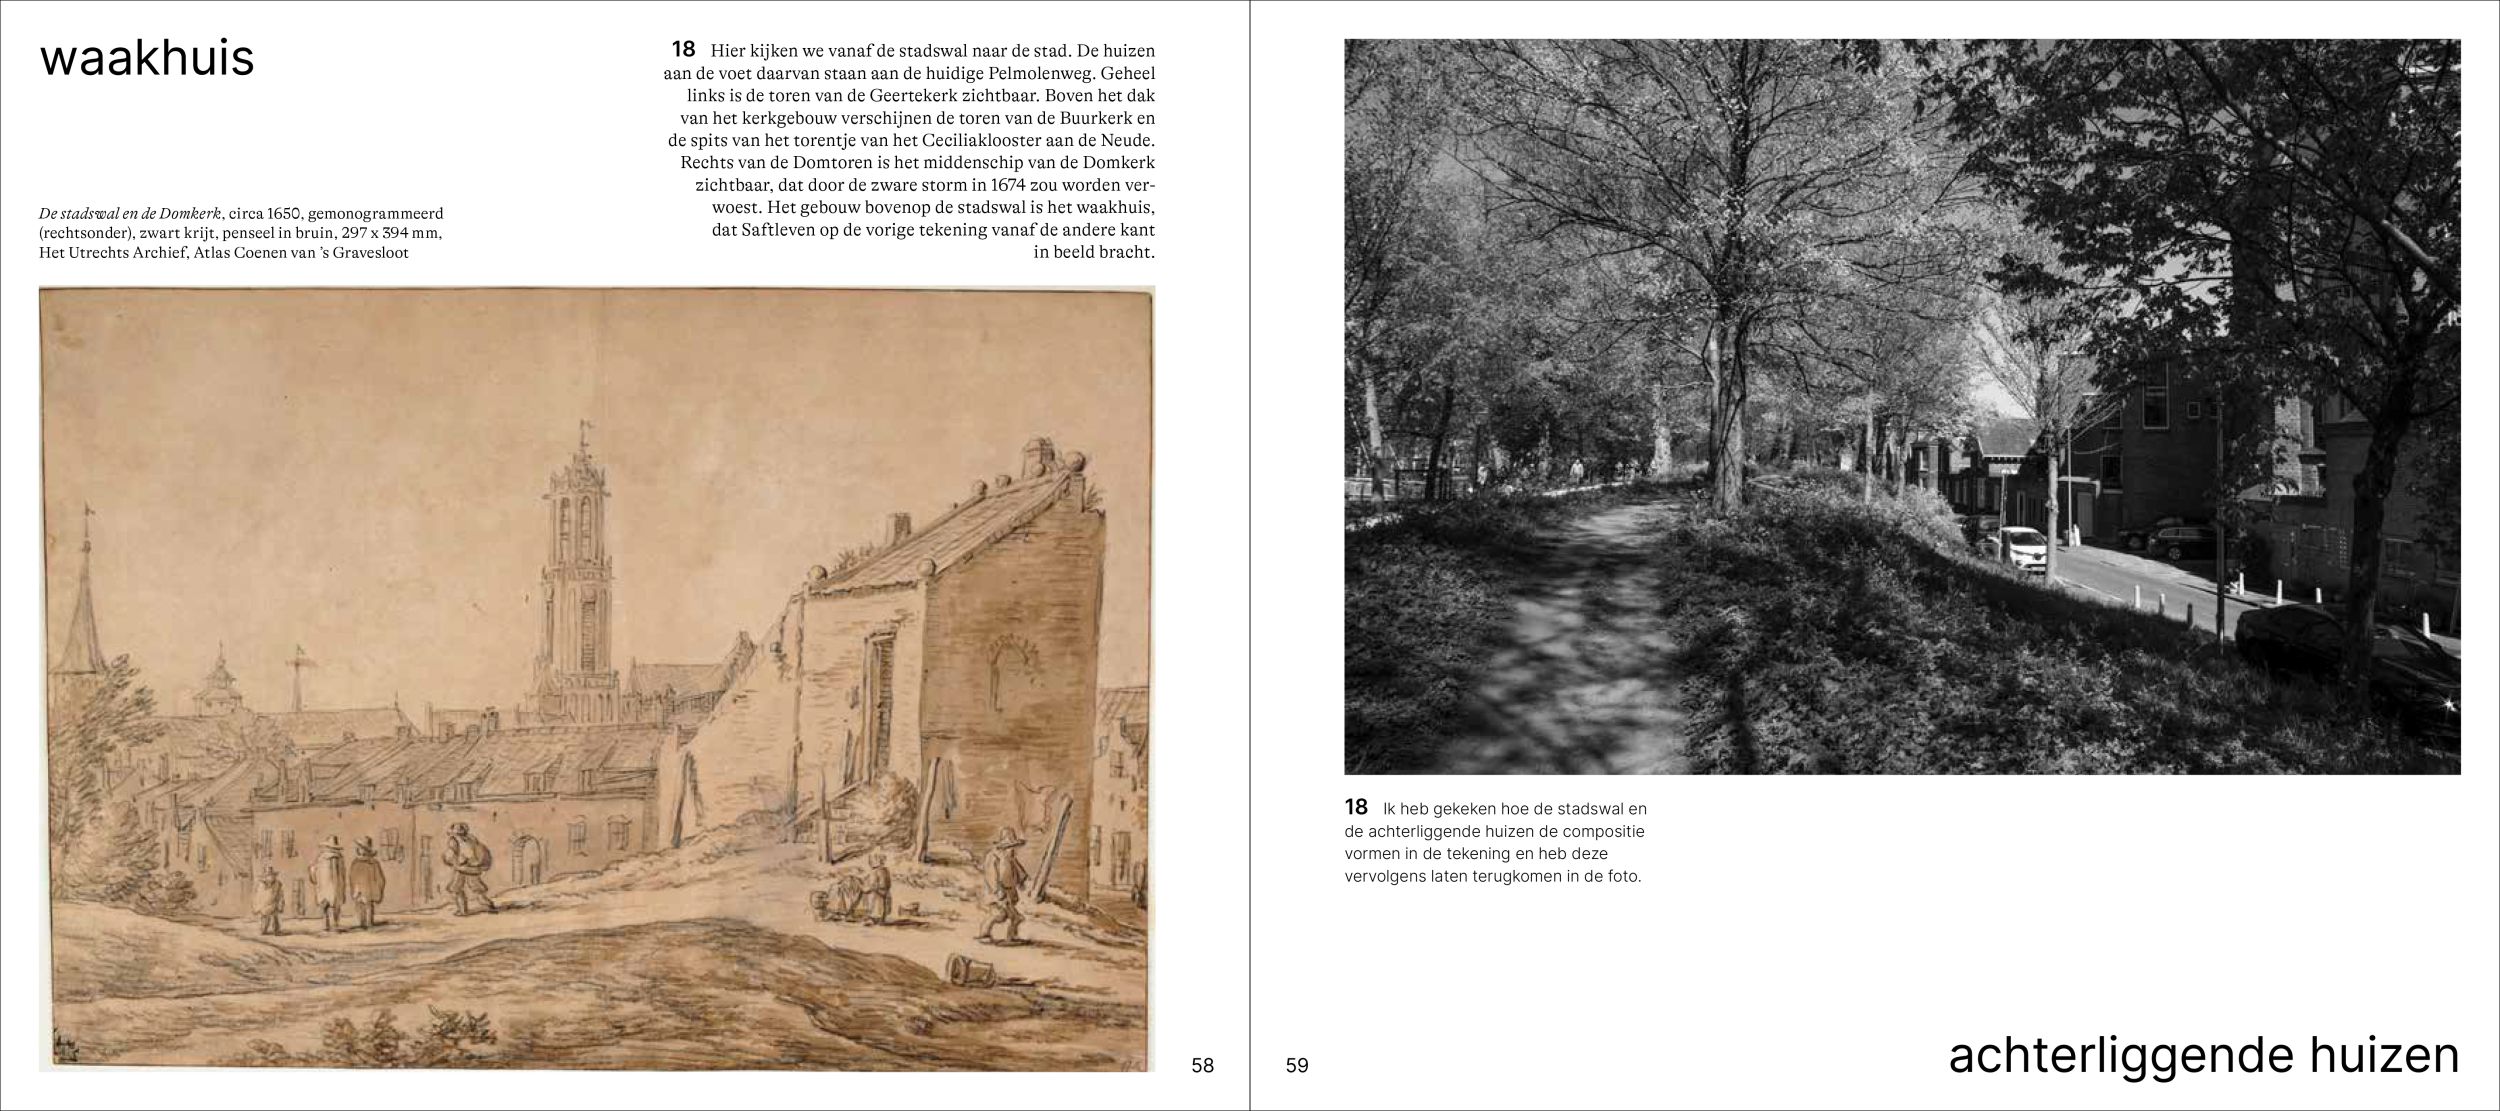 Inkijkexemplaar van het boek: <em>Wandelen over de Utrechtse stadswal. Tekeningen van toen en foto’s van nu</em> - © Uitgeverij Matrijs